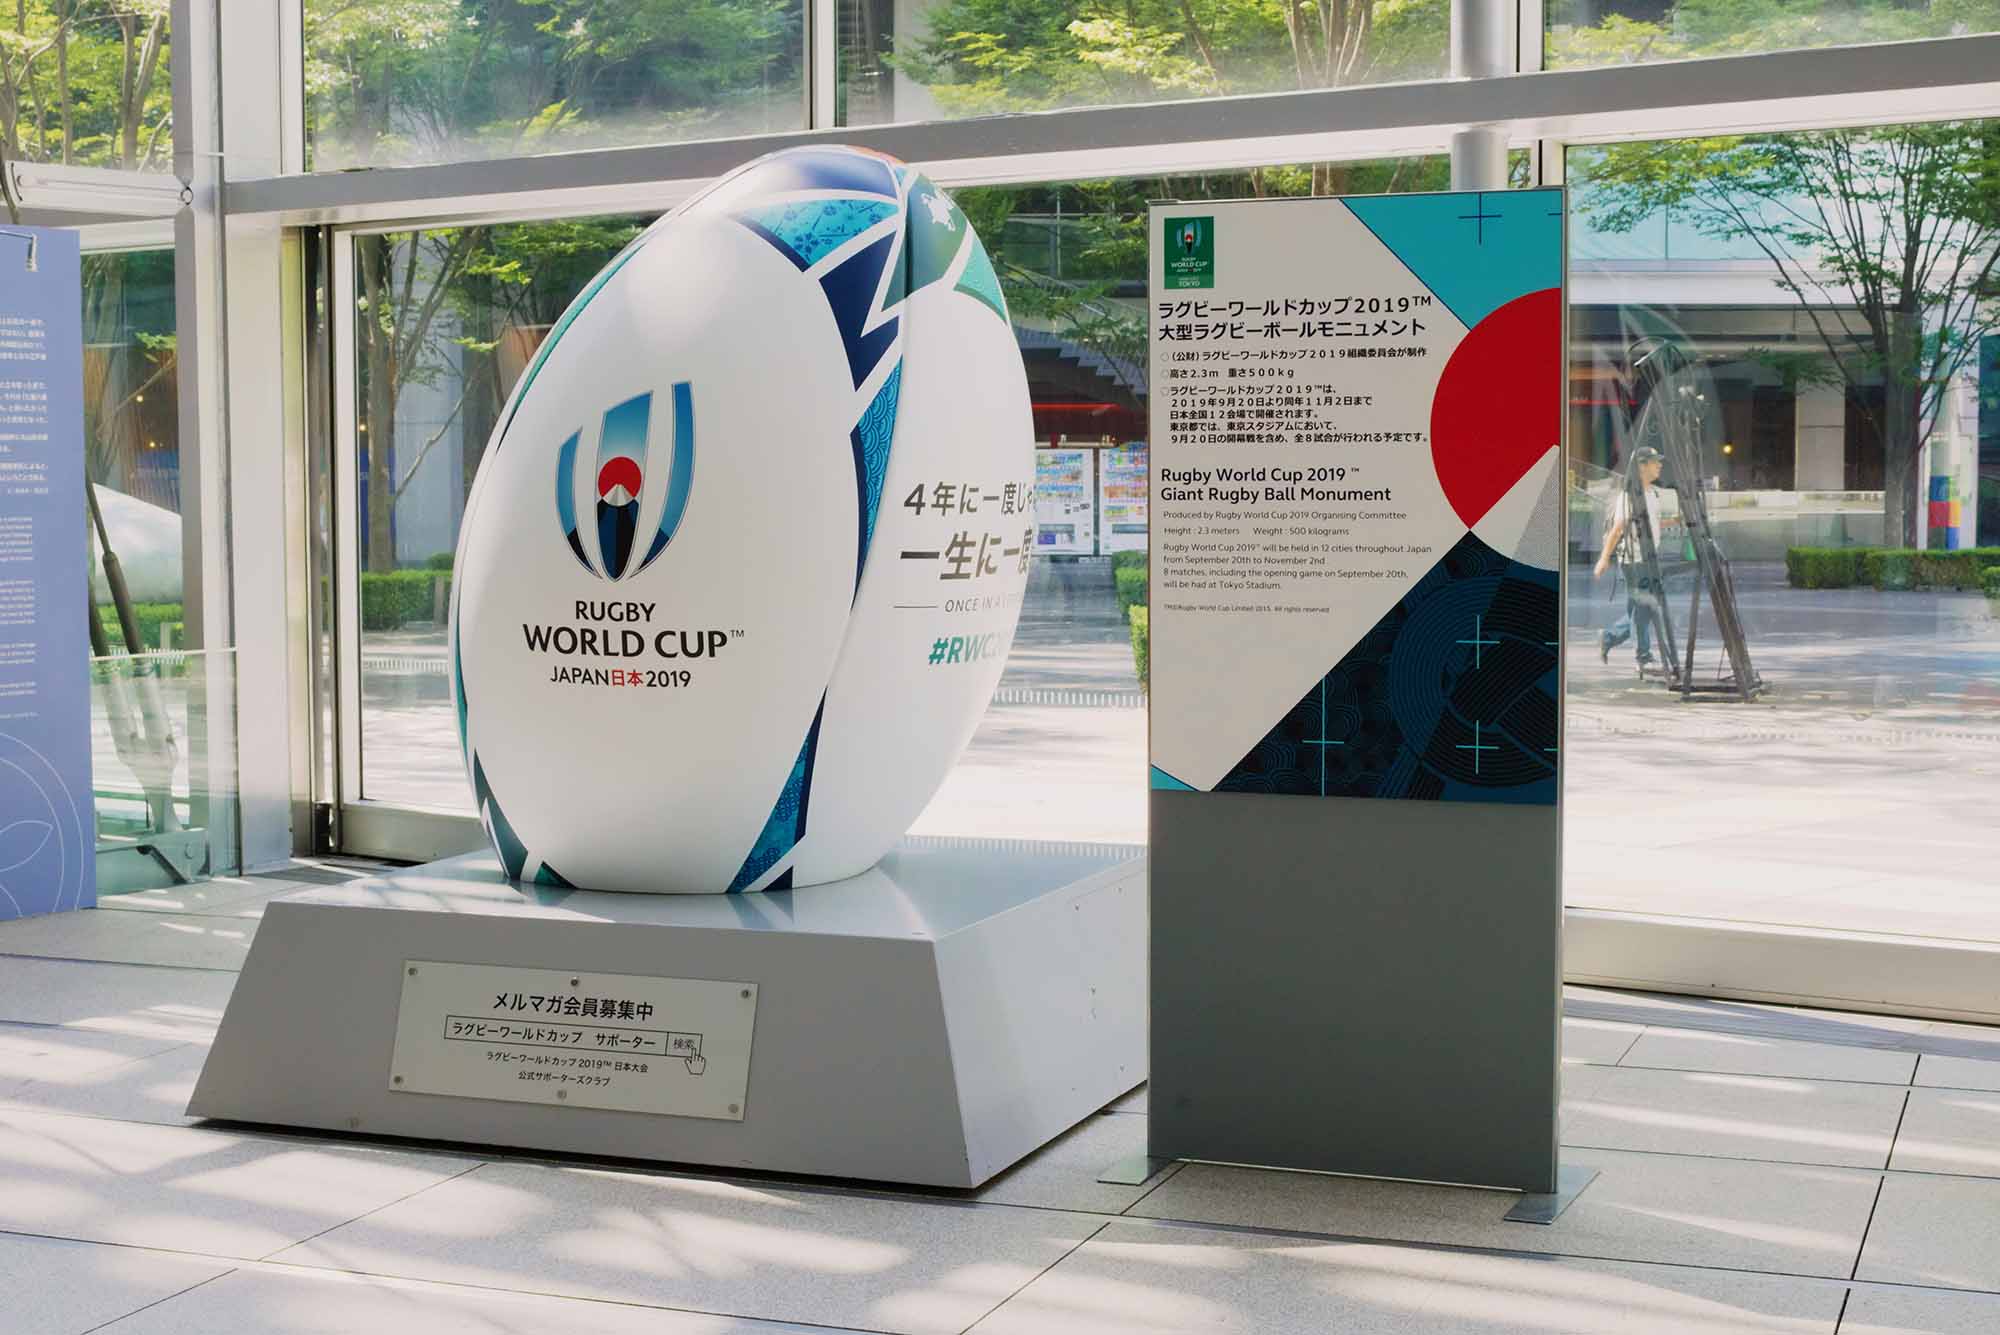 桐箱2019 ラグビーW杯 日本大会ギフト「スクラム型水引ブローチ」